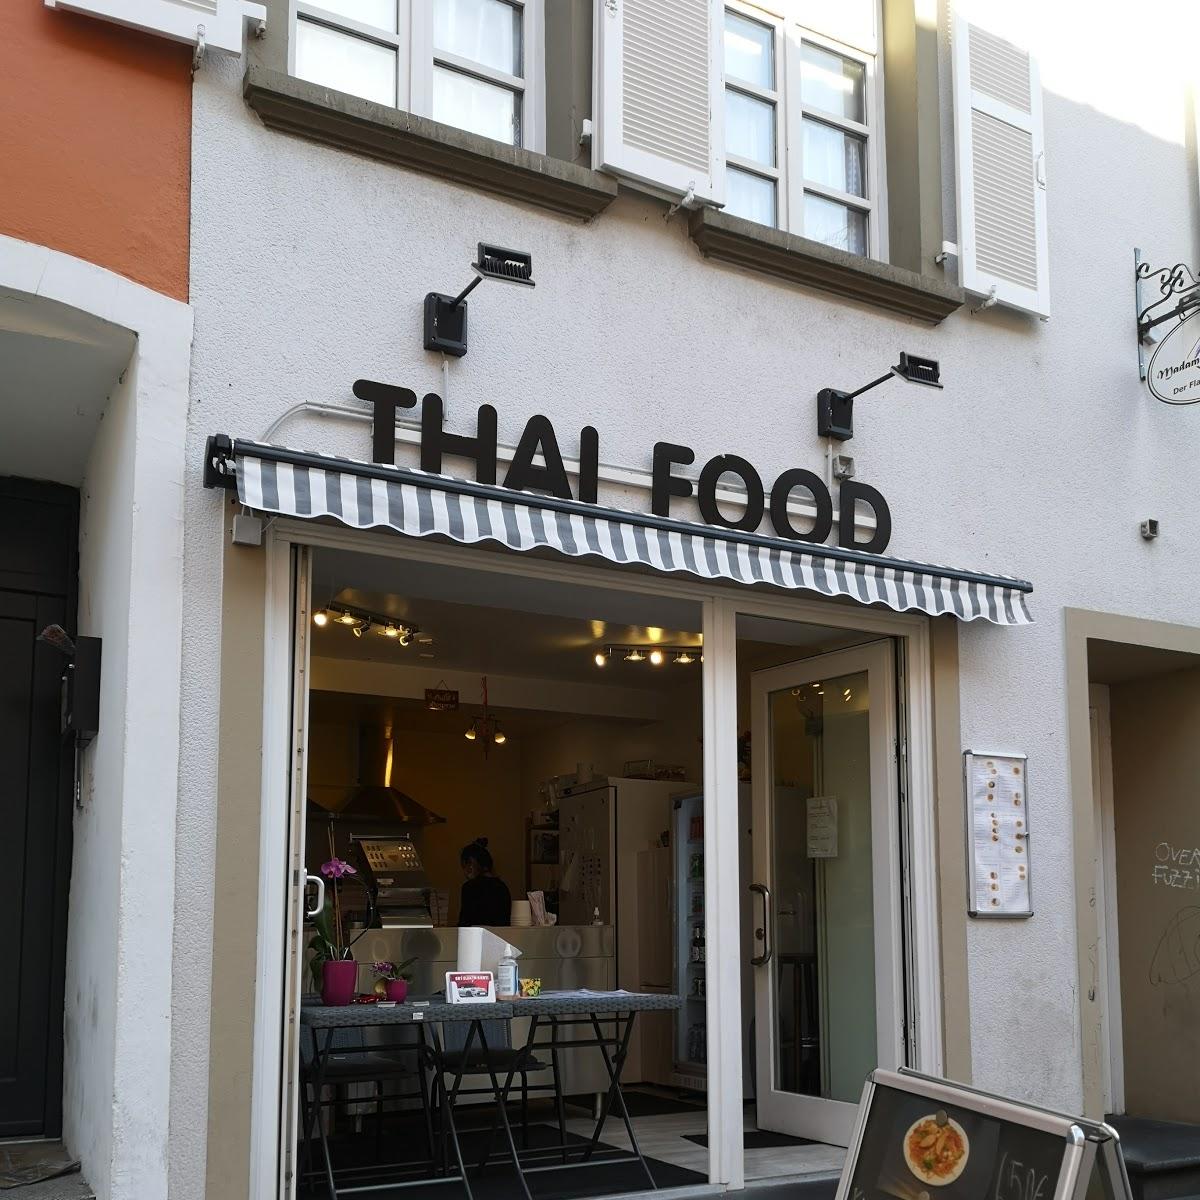 Restaurant "Thai food" in Saarlouis